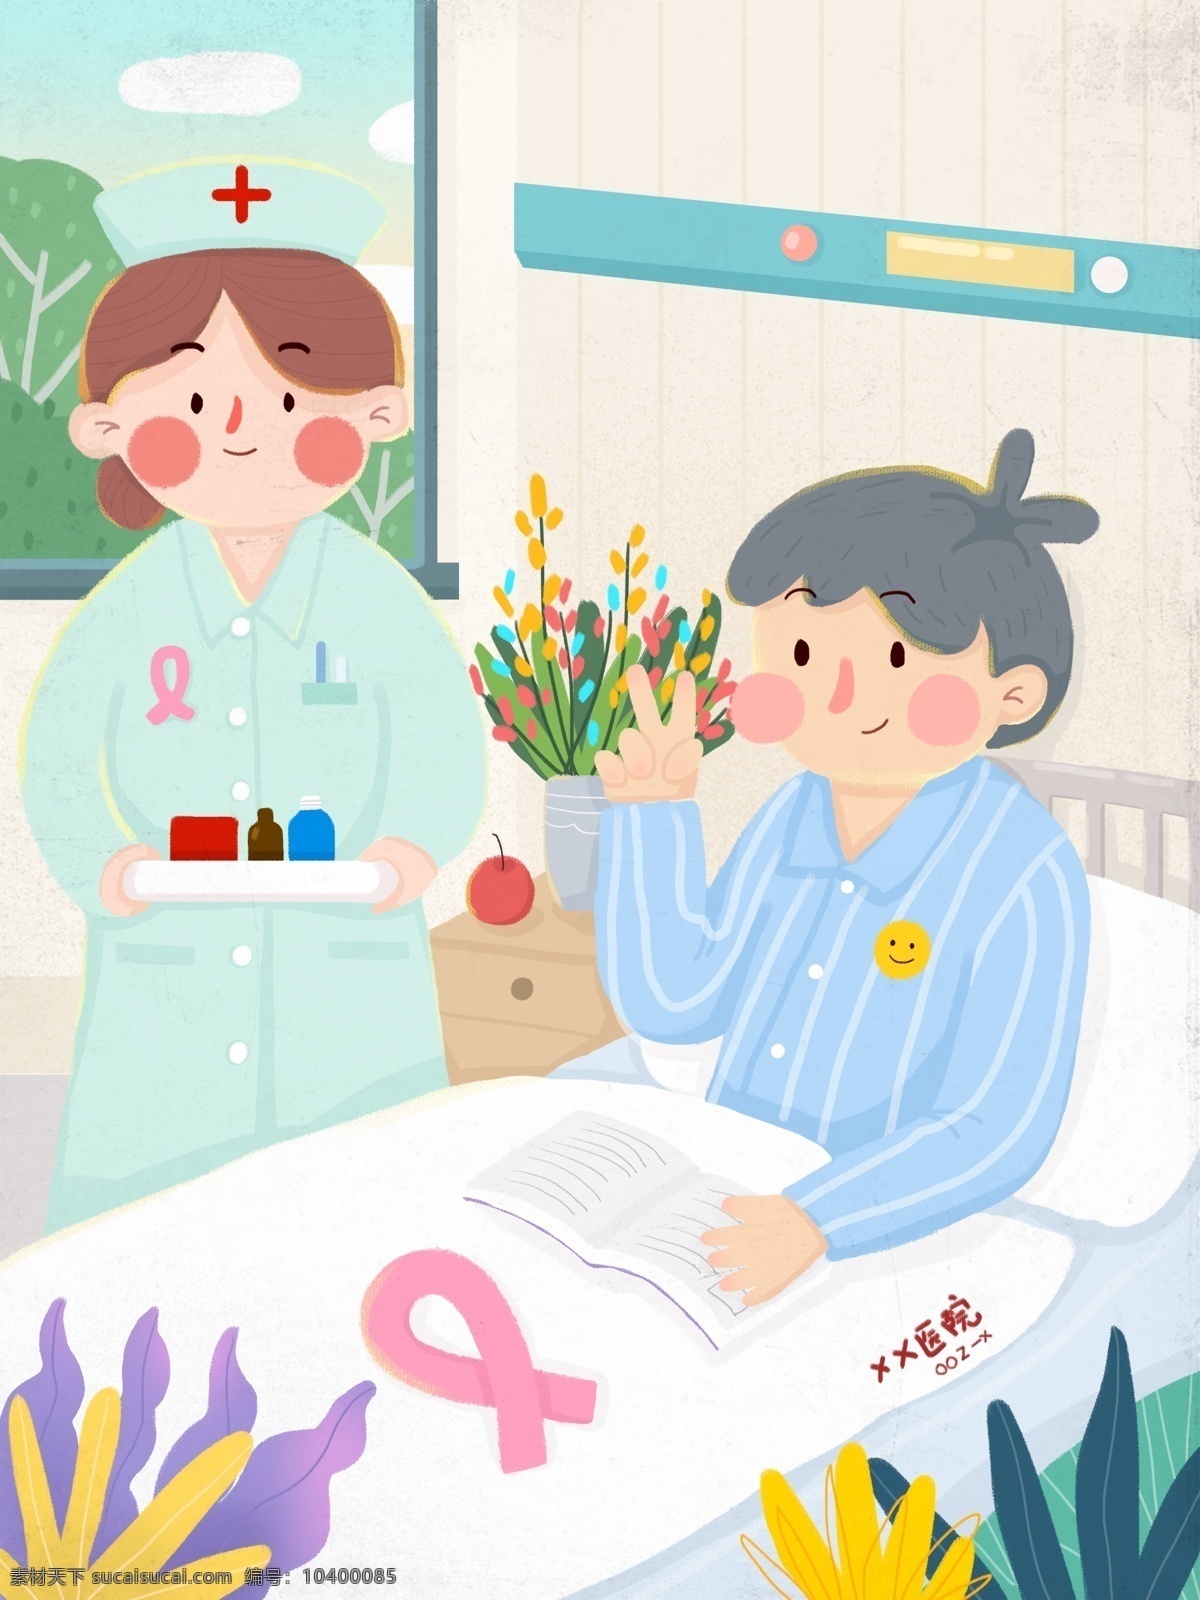 抗击 癌症 病人 积极 乐观 治疗 护士 细心 照顾 植物 花瓶 苹果 病床 粉丝带